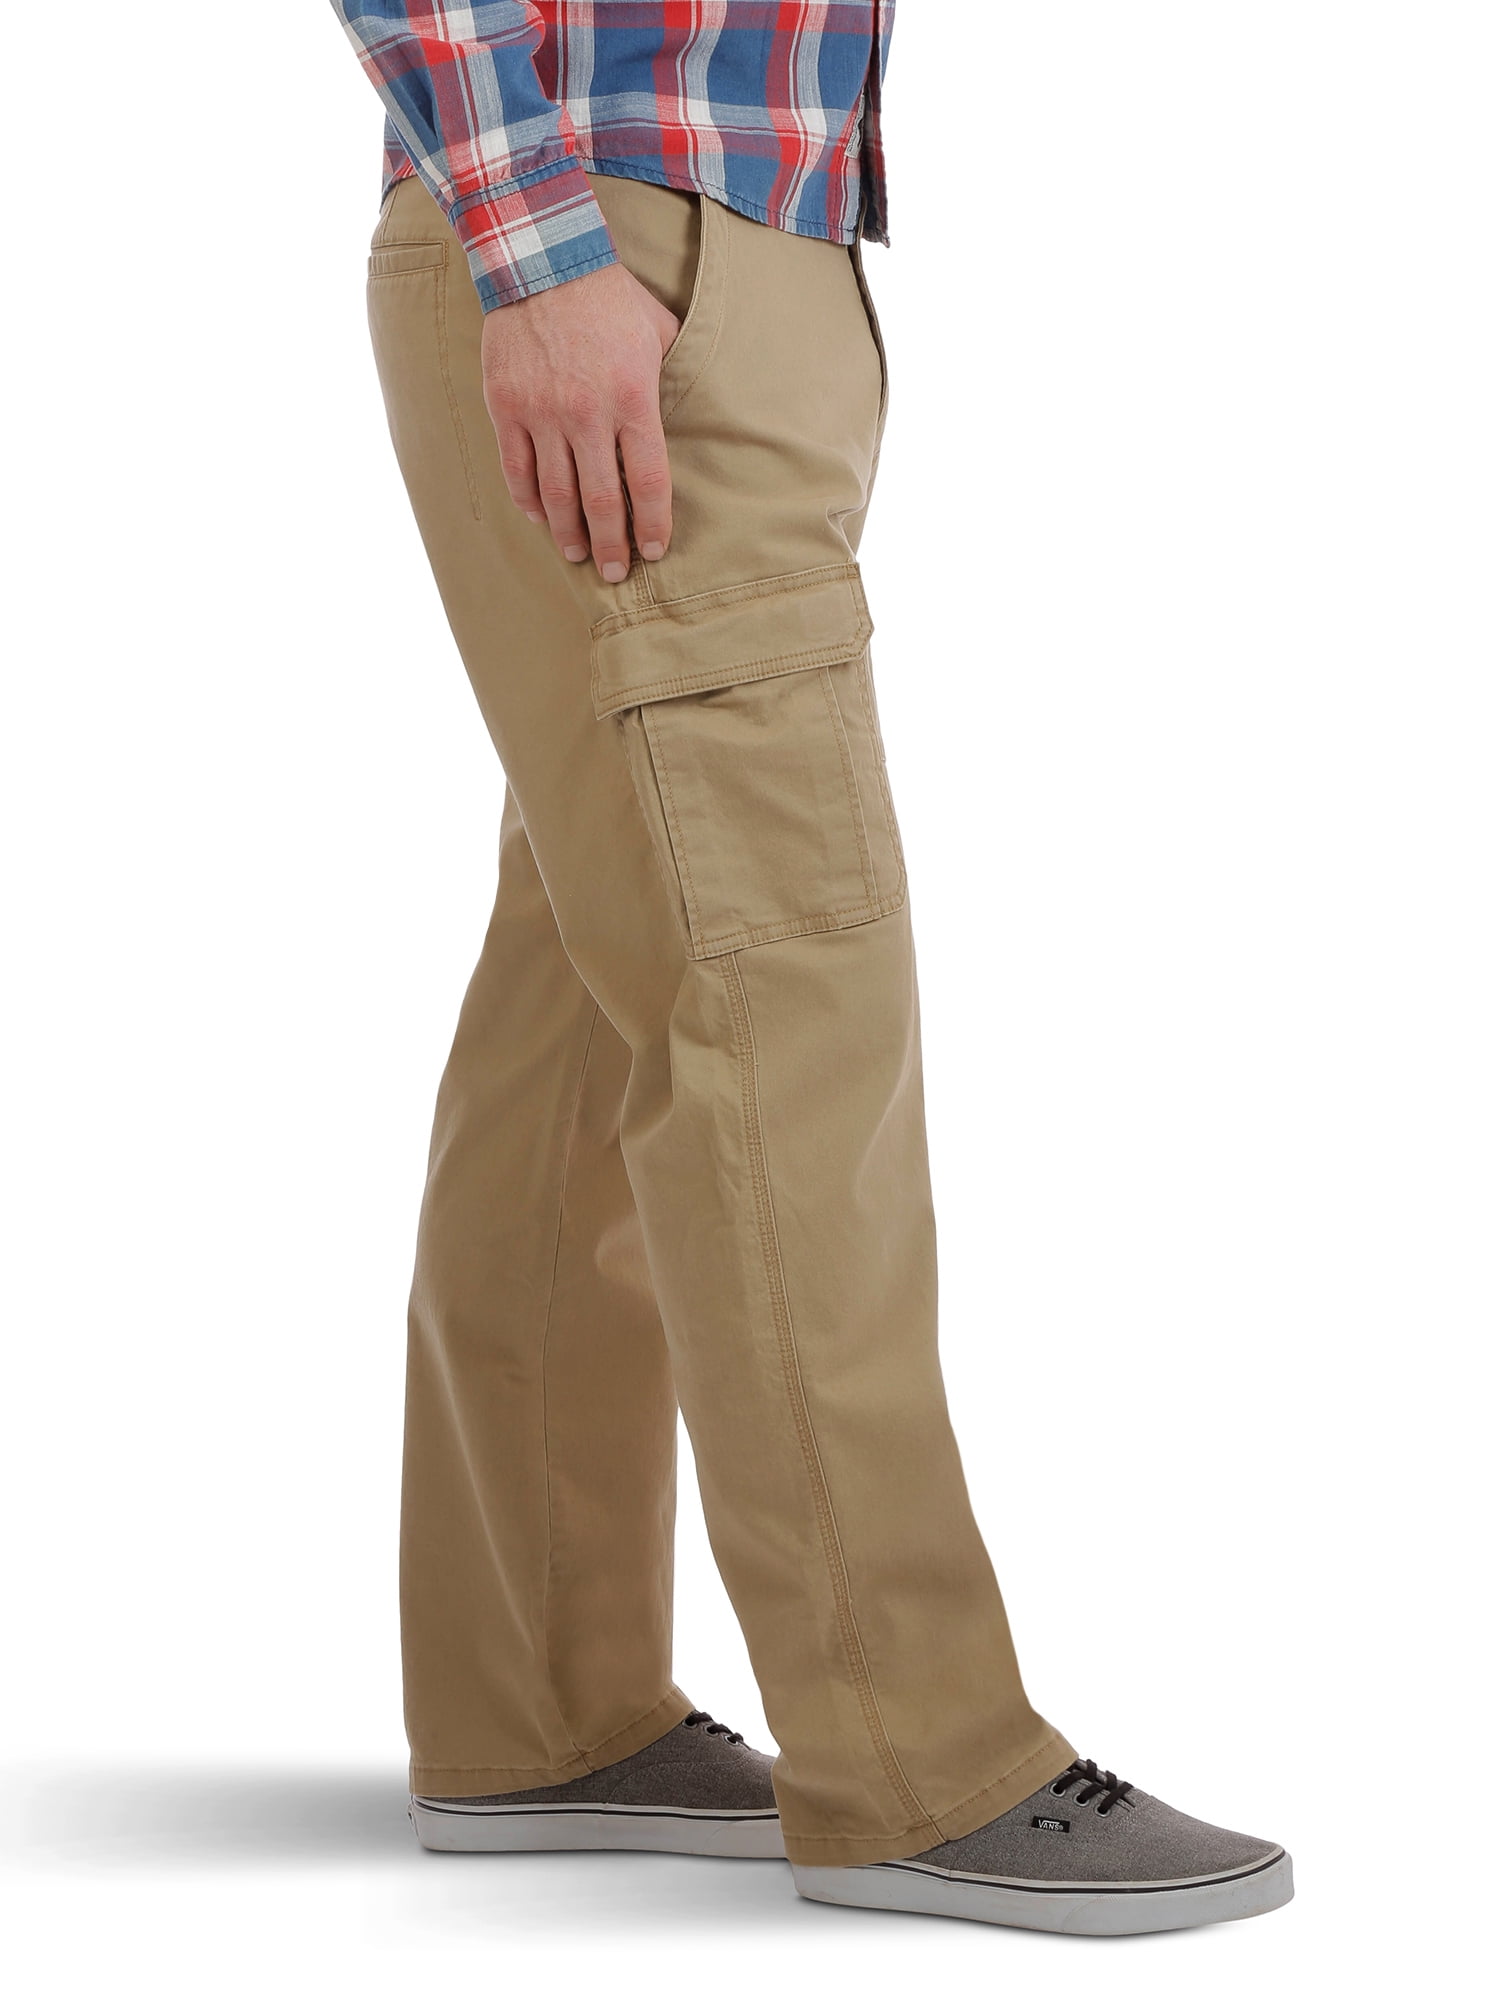 Buy Wrangler Men's Flex Cargo Pants Relaxed Fit Elmwood Khaki w/Tech  Pocket, Elmwood, 46W x 30L at Amazon.in